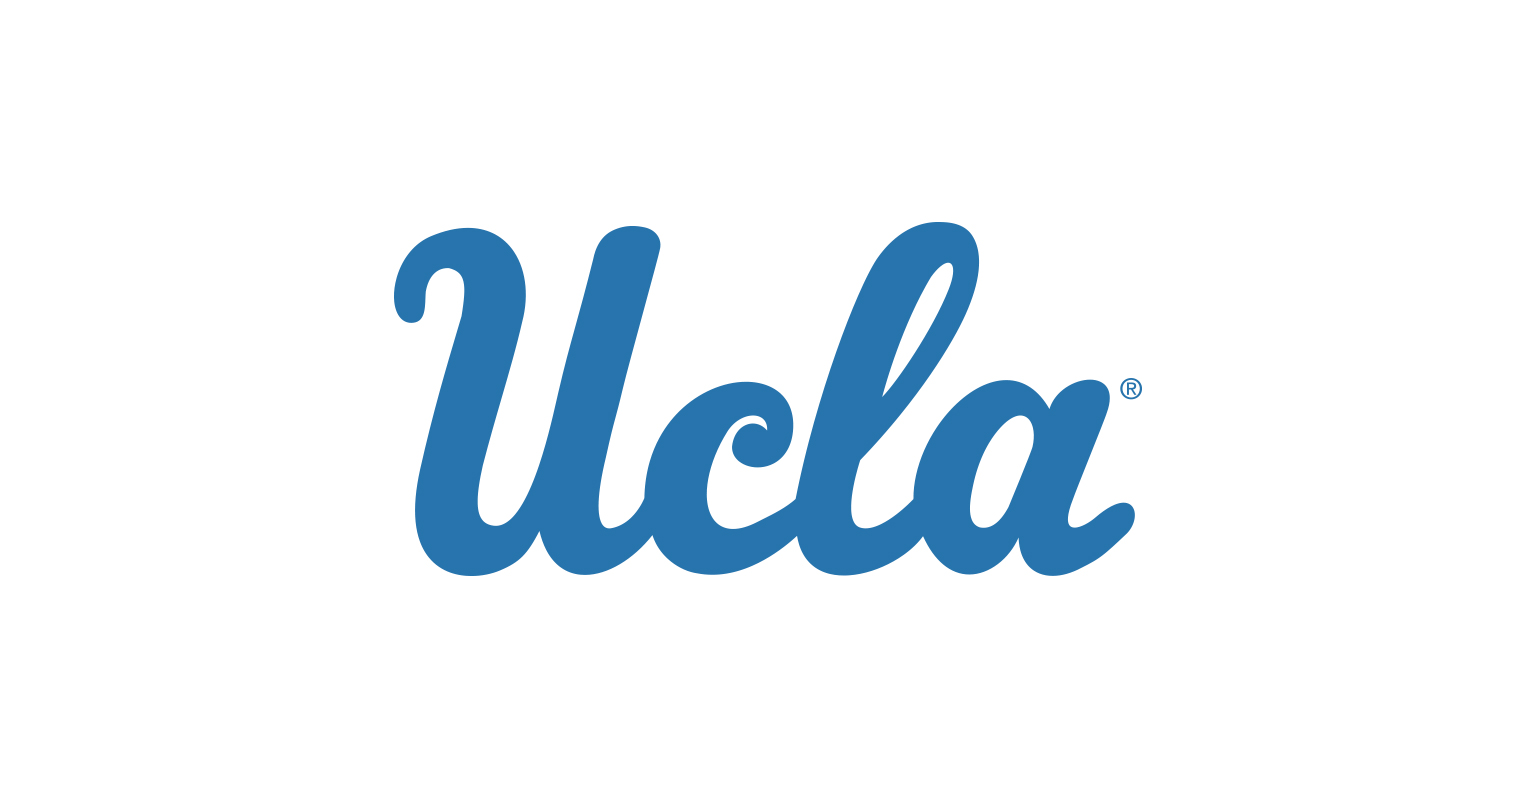 UCLA- Los Angeles